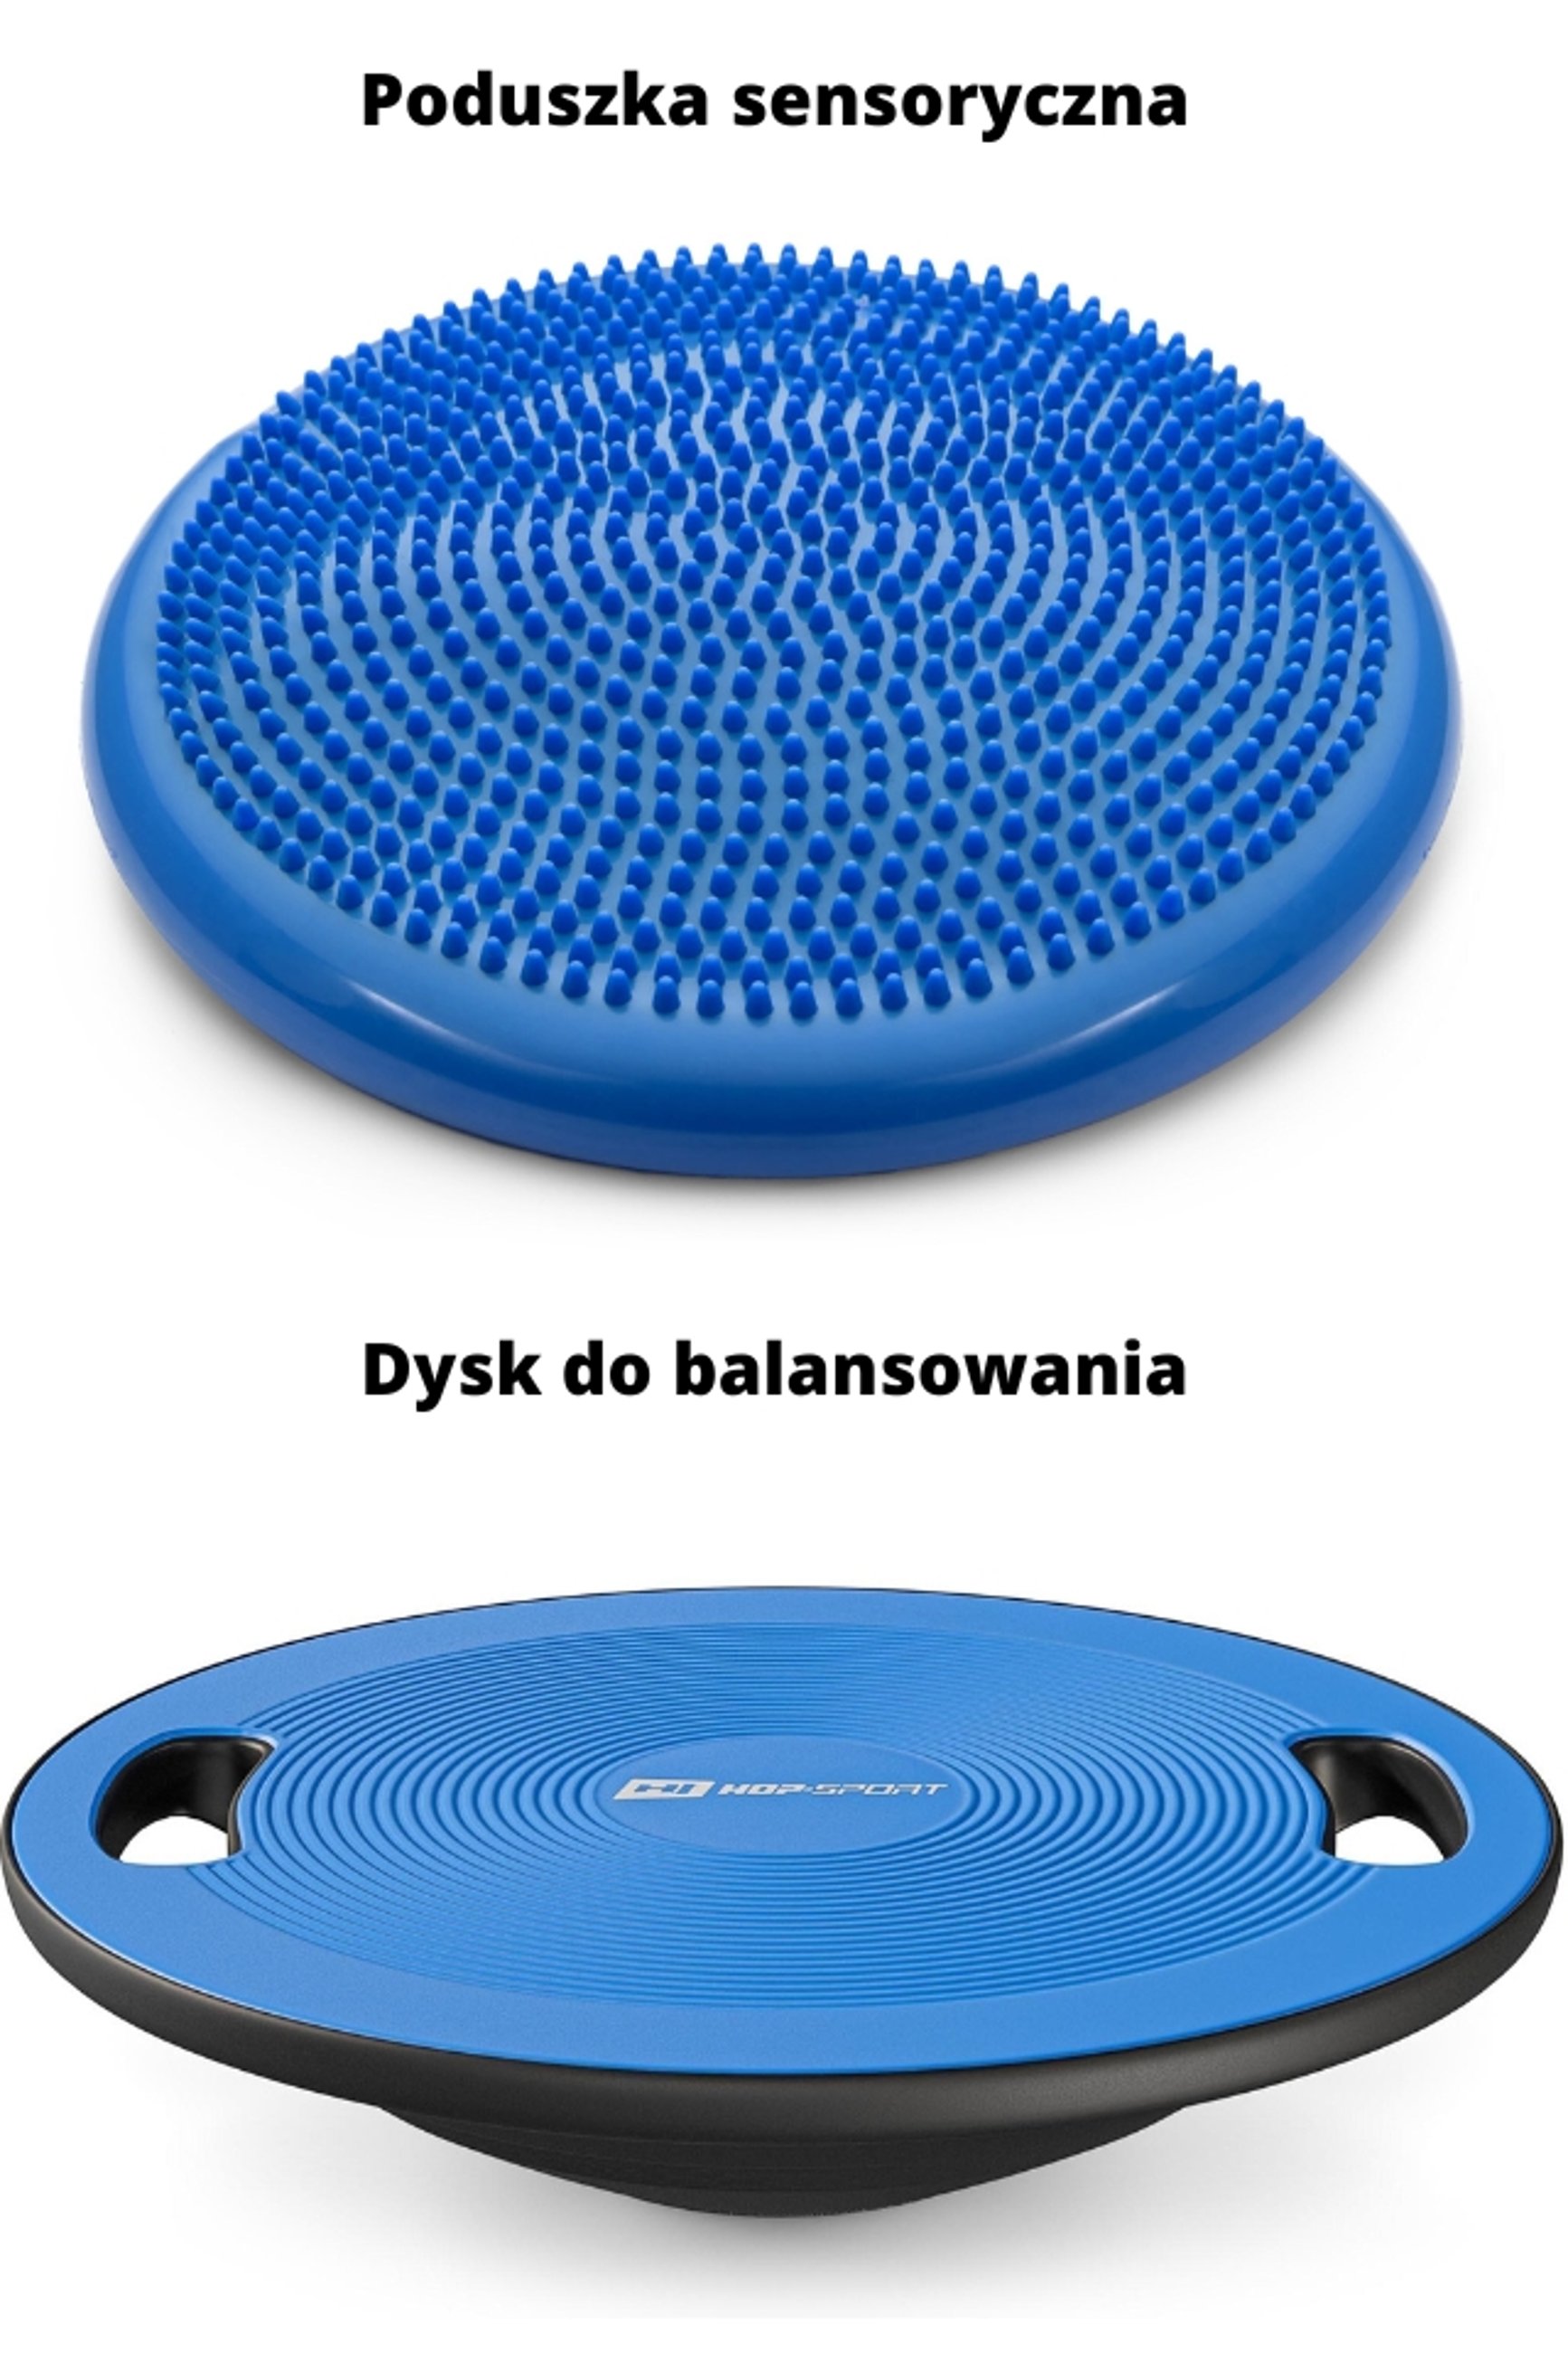 poduszka sensoryczna i dysk do balansowania w kolorze niebieskim marki Hop-Sport